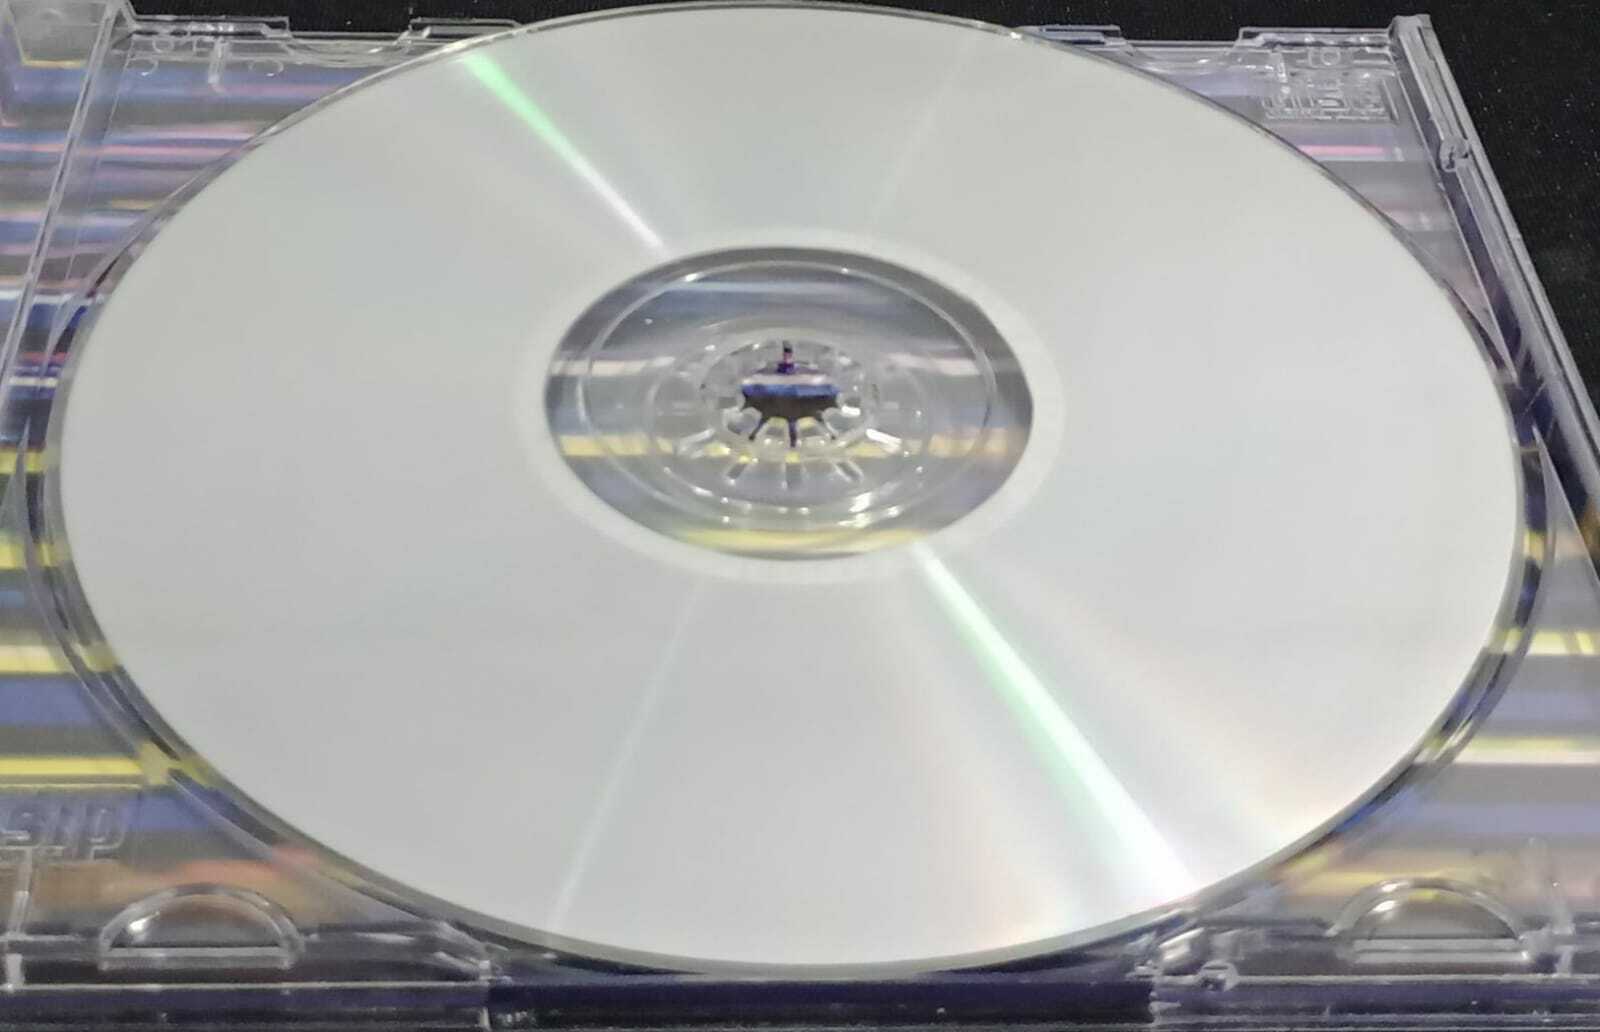 CD - U2 - Zooropa